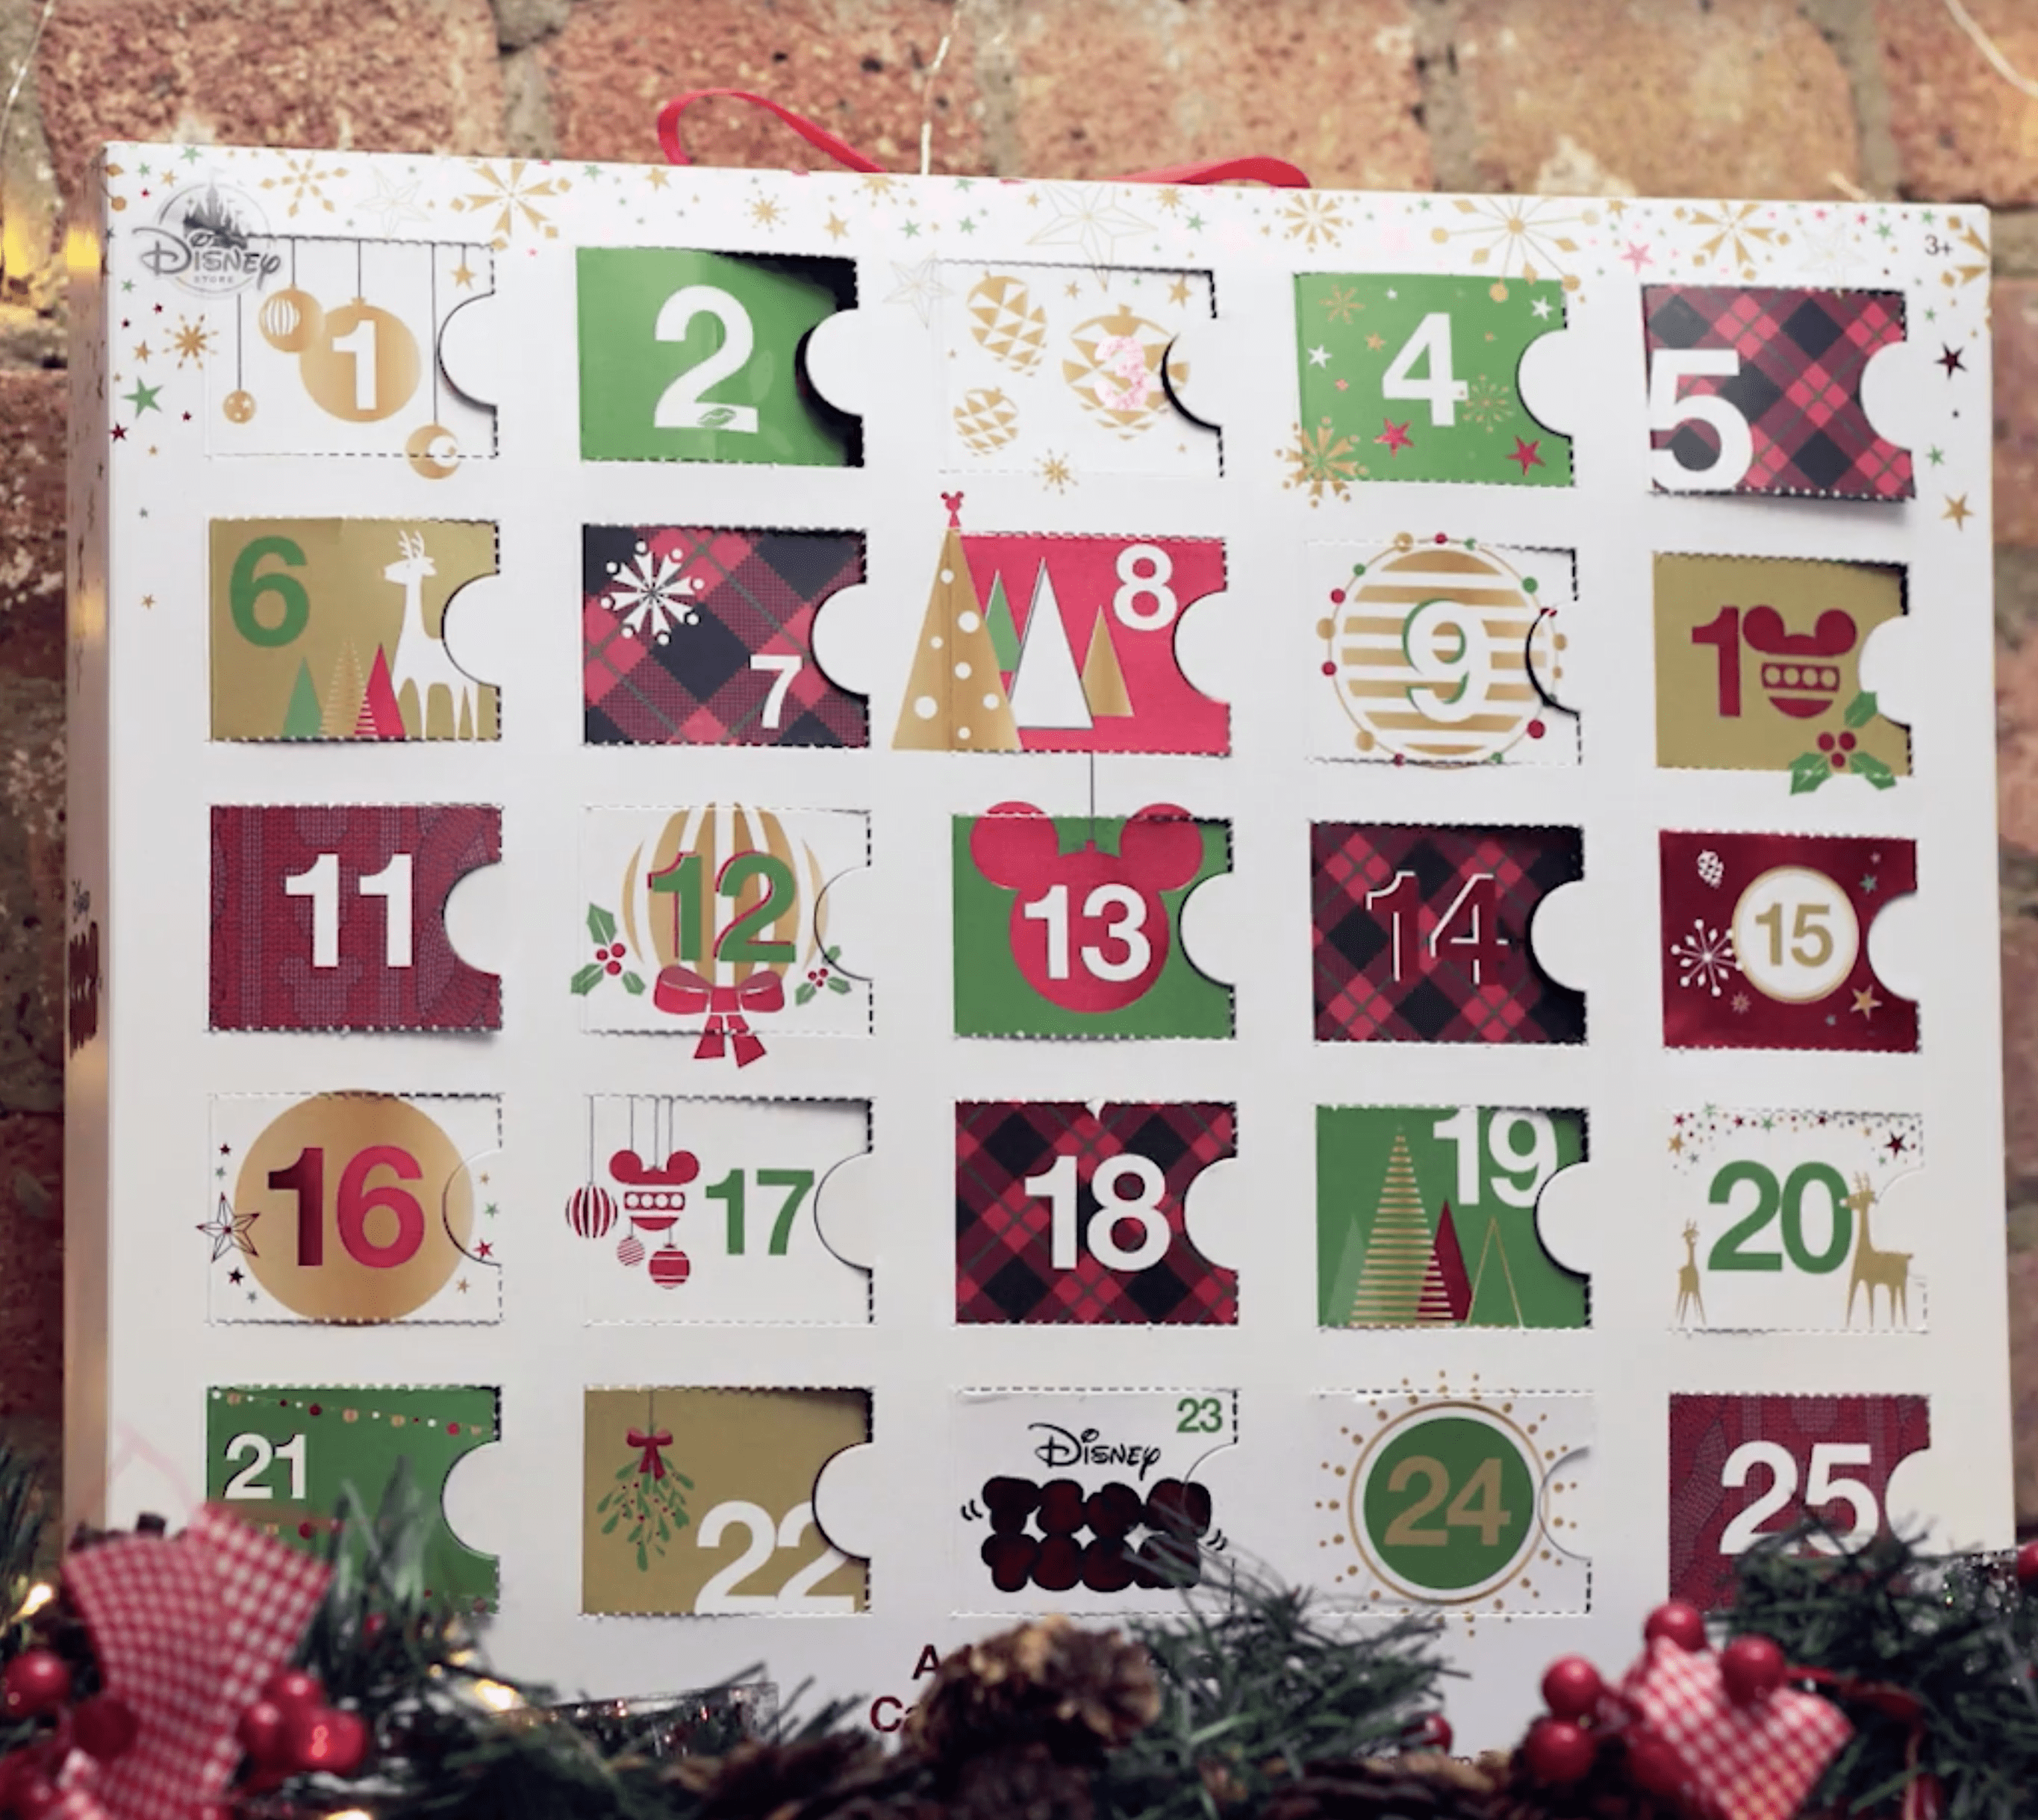 disney tsum tsum plush advent calendar